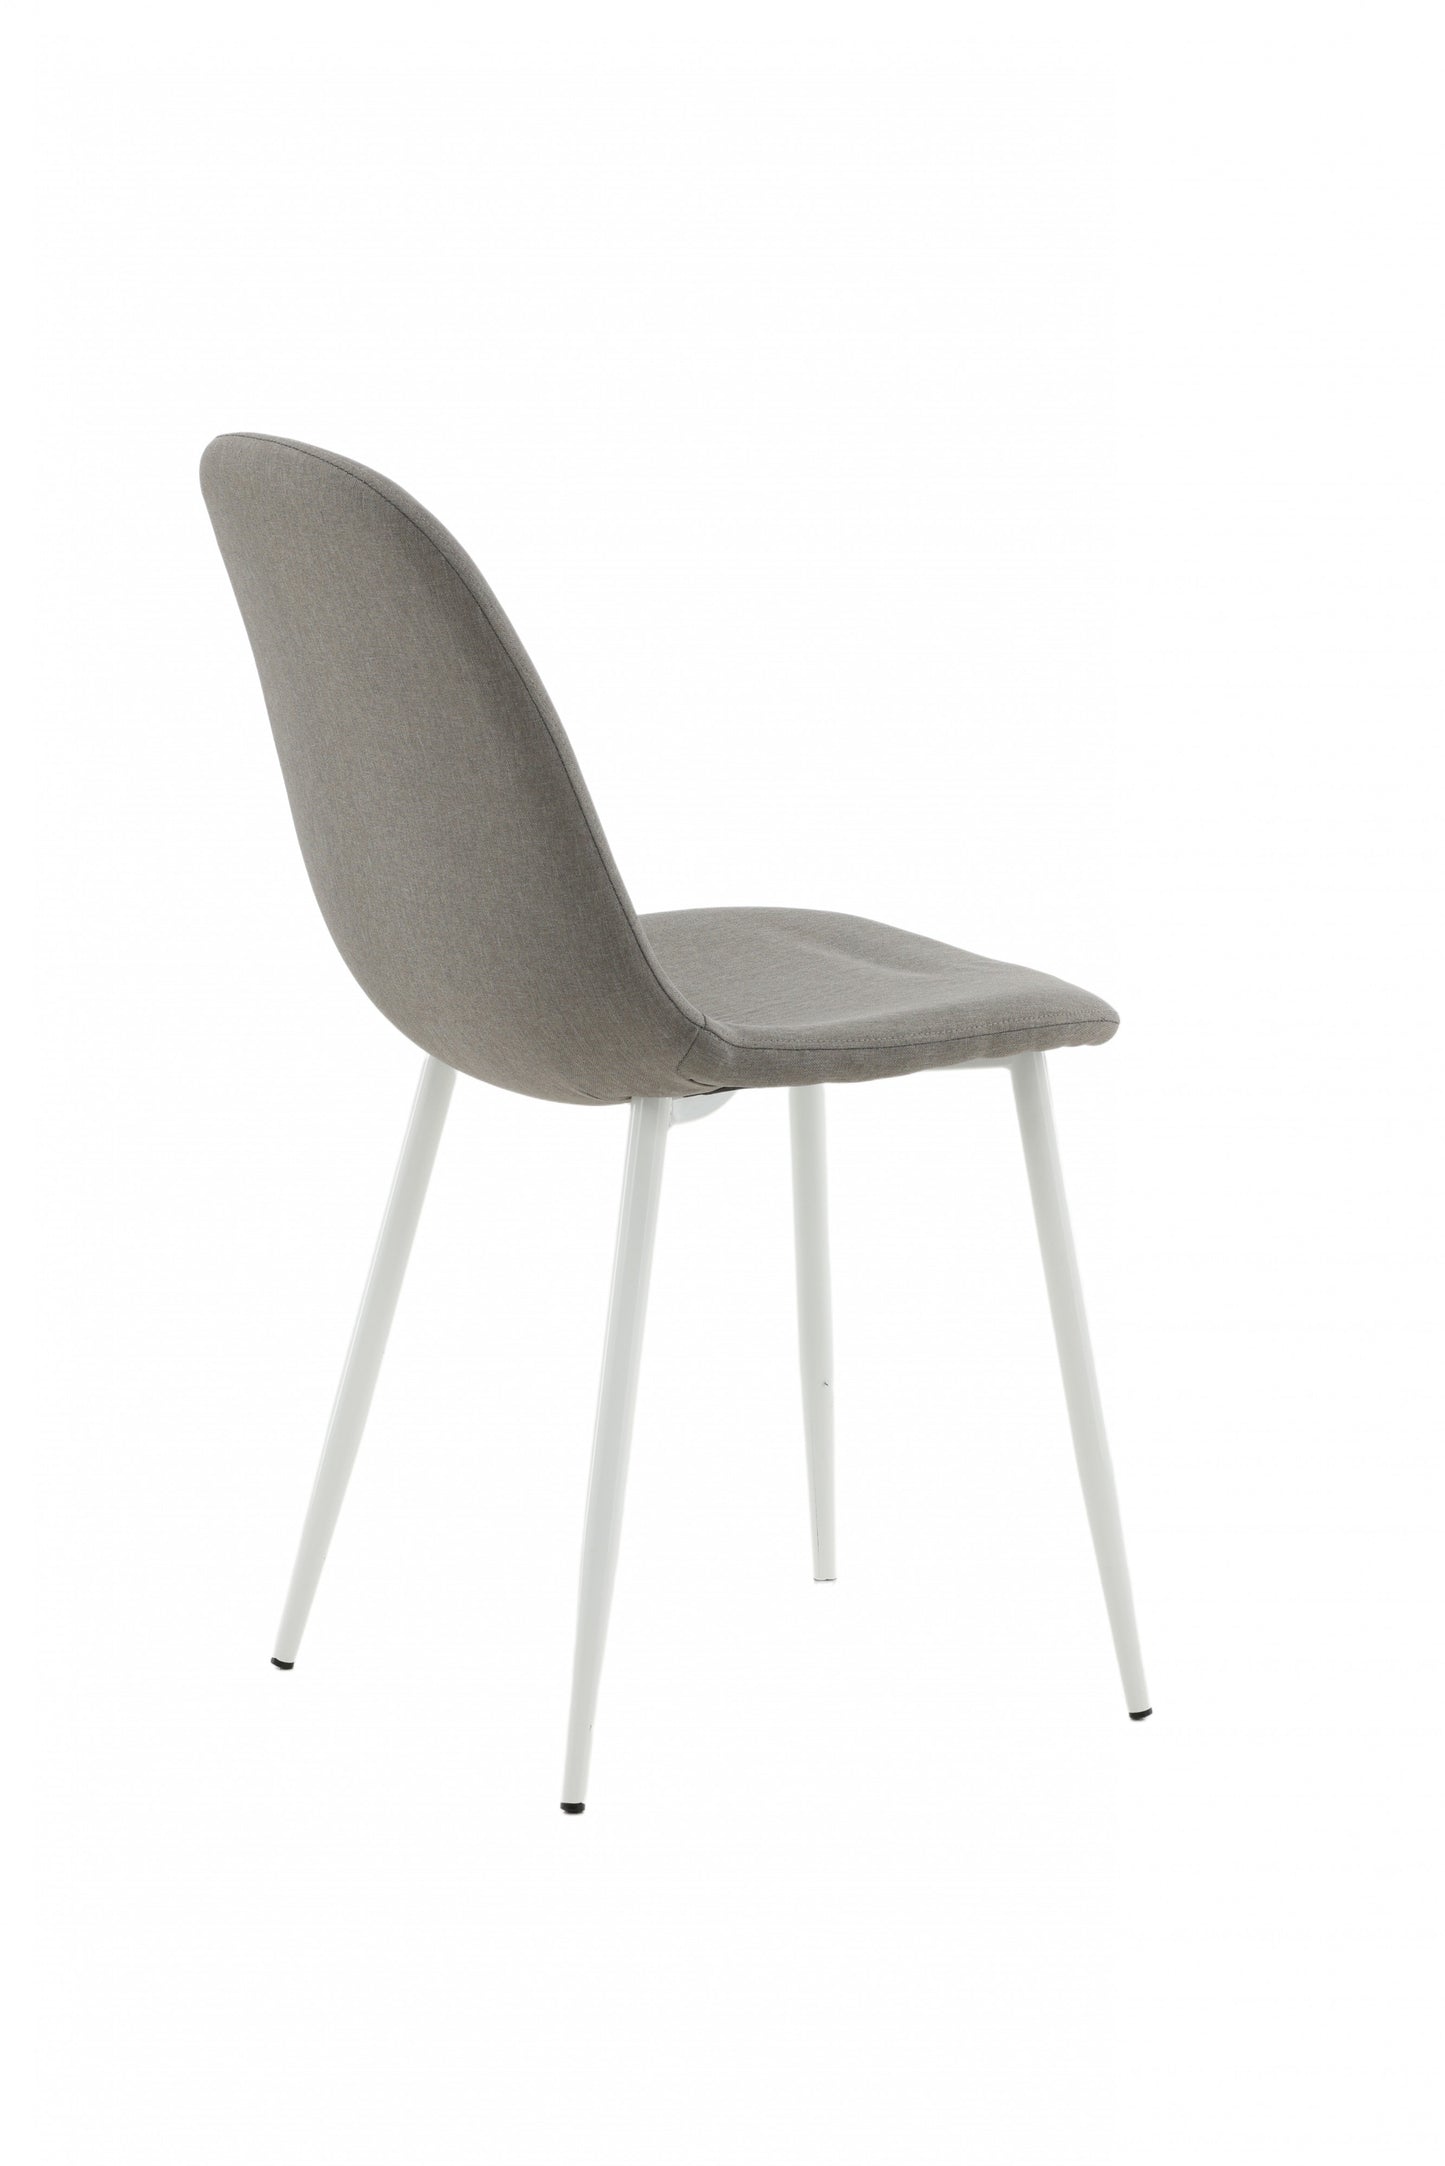 Venture-Design | Polar Stuhl - Grauer Stoff, Weiße Beine